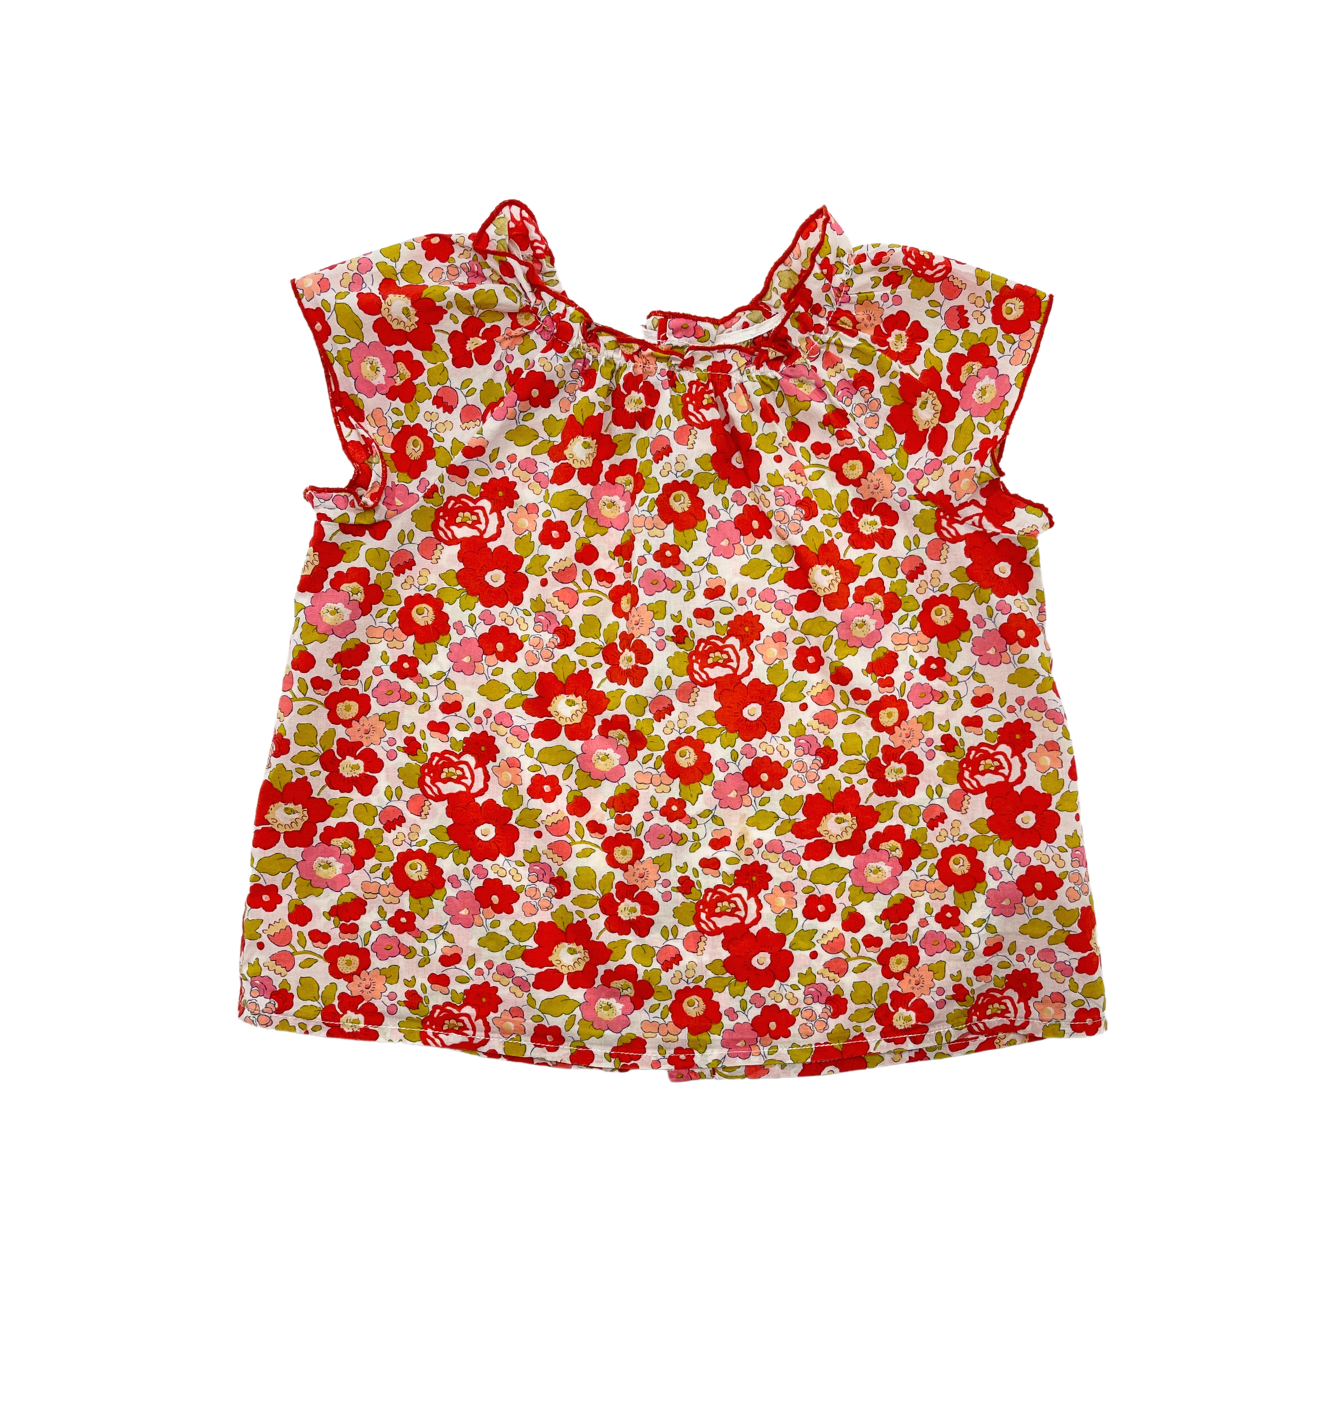 BONPOINT - Liberty floral blouse - 18 months